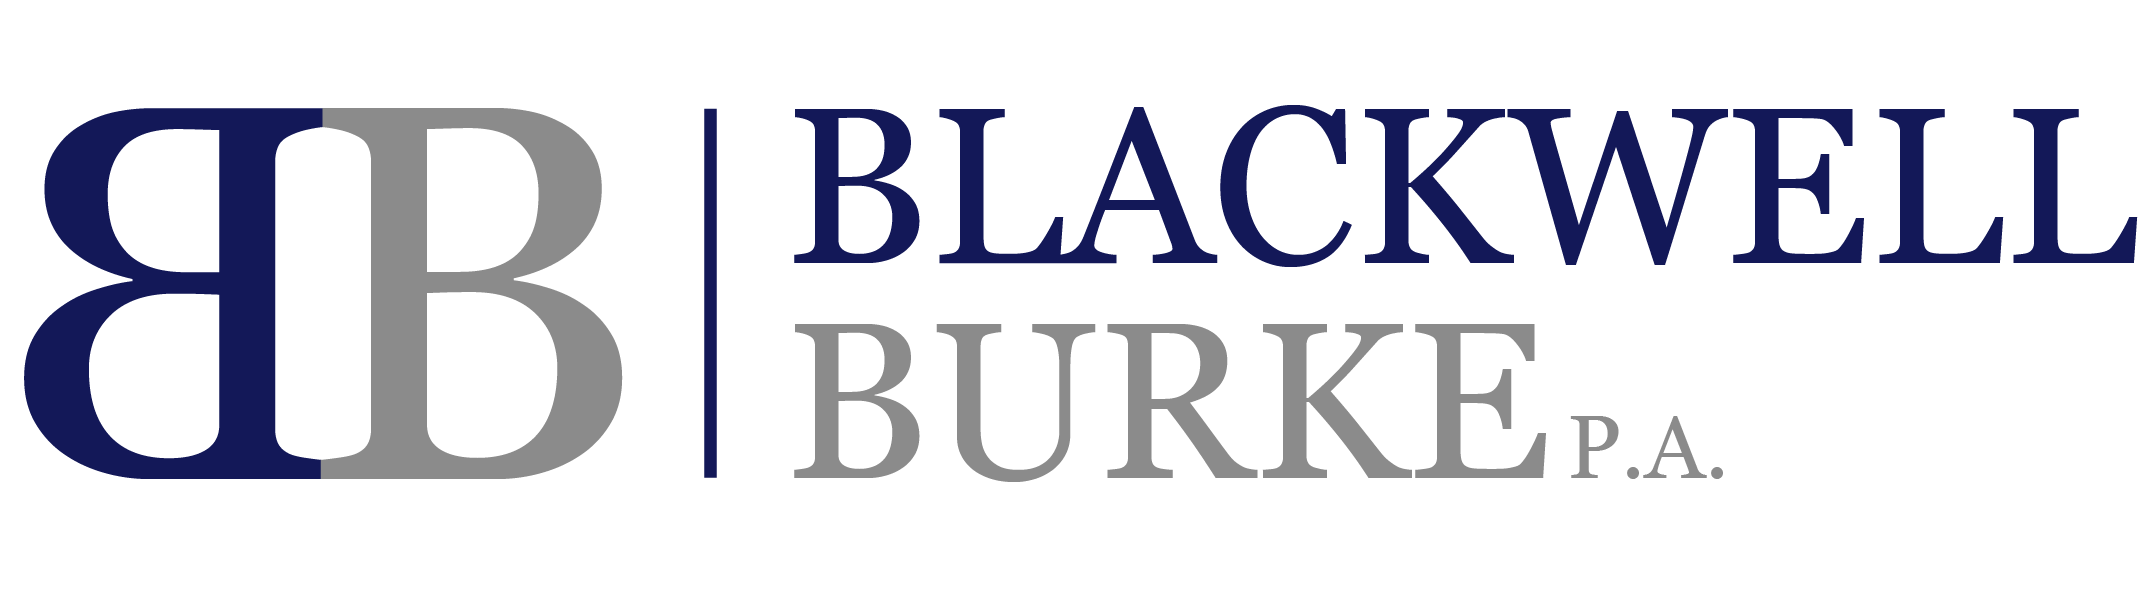 Blackwell Burke P.A.